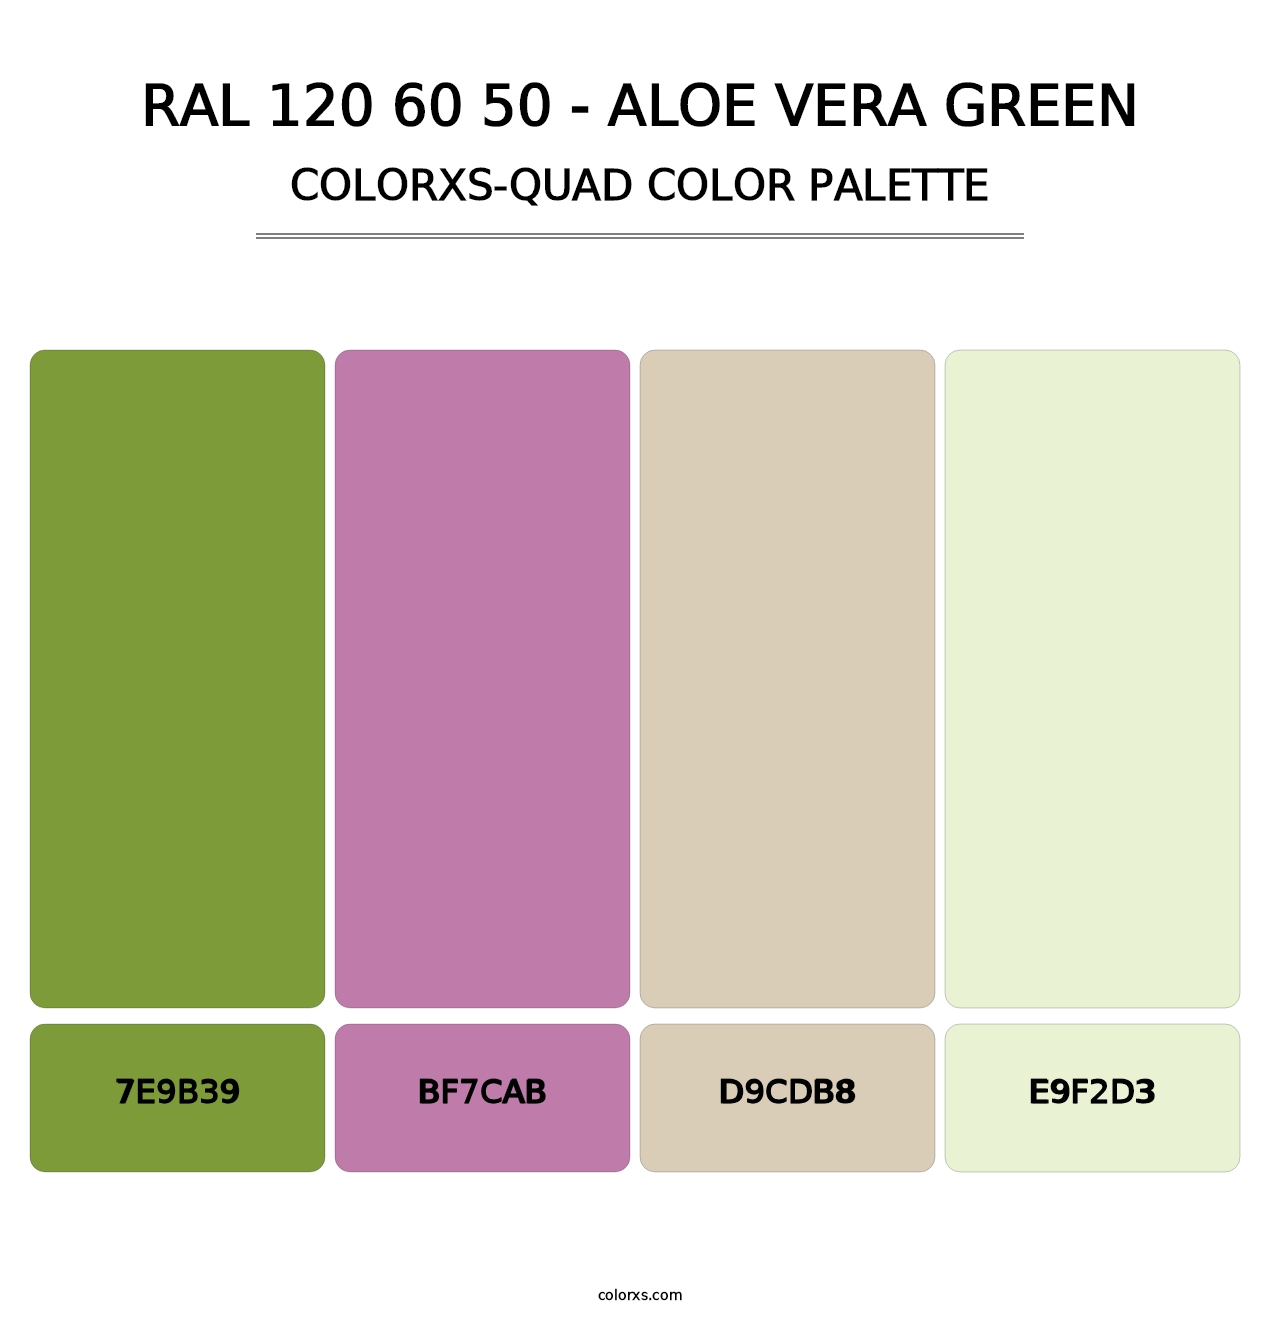 RAL 120 60 50 - Aloe Vera Green - Colorxs Quad Palette